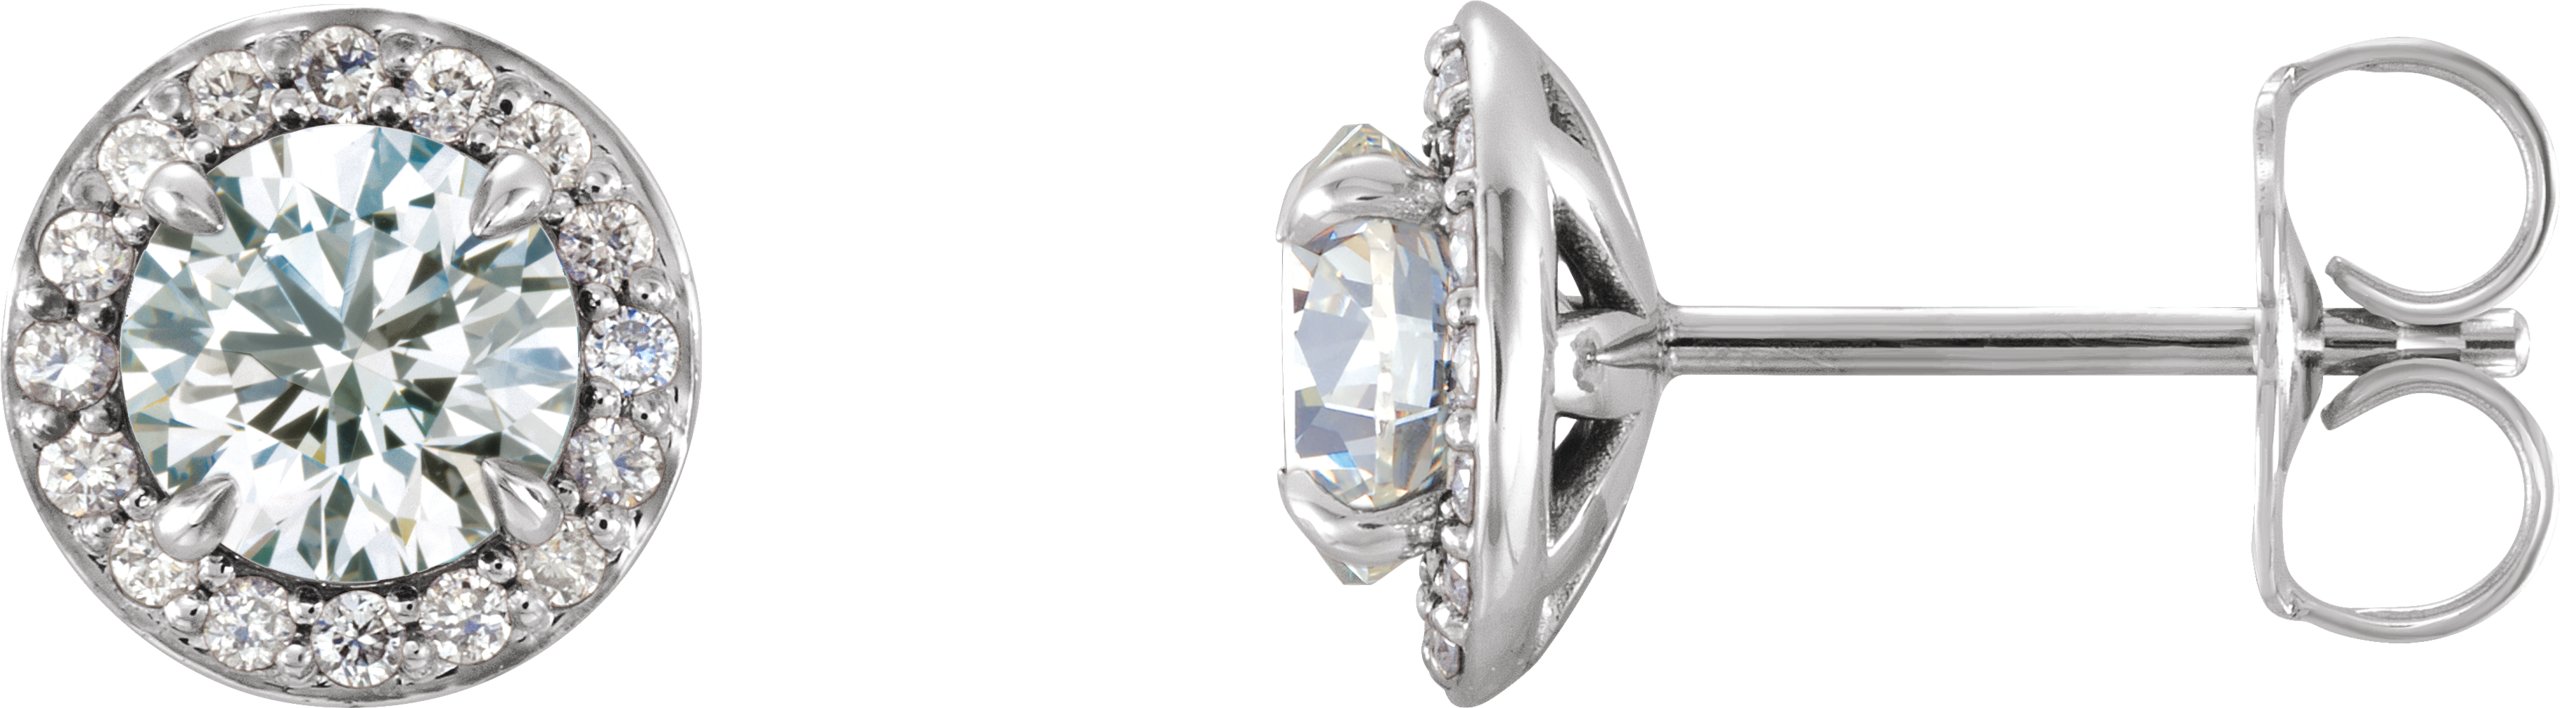 14K White 5 mm Round Forever One Moissanite and .125 CTW Diamond Earrings Ref. 12886736